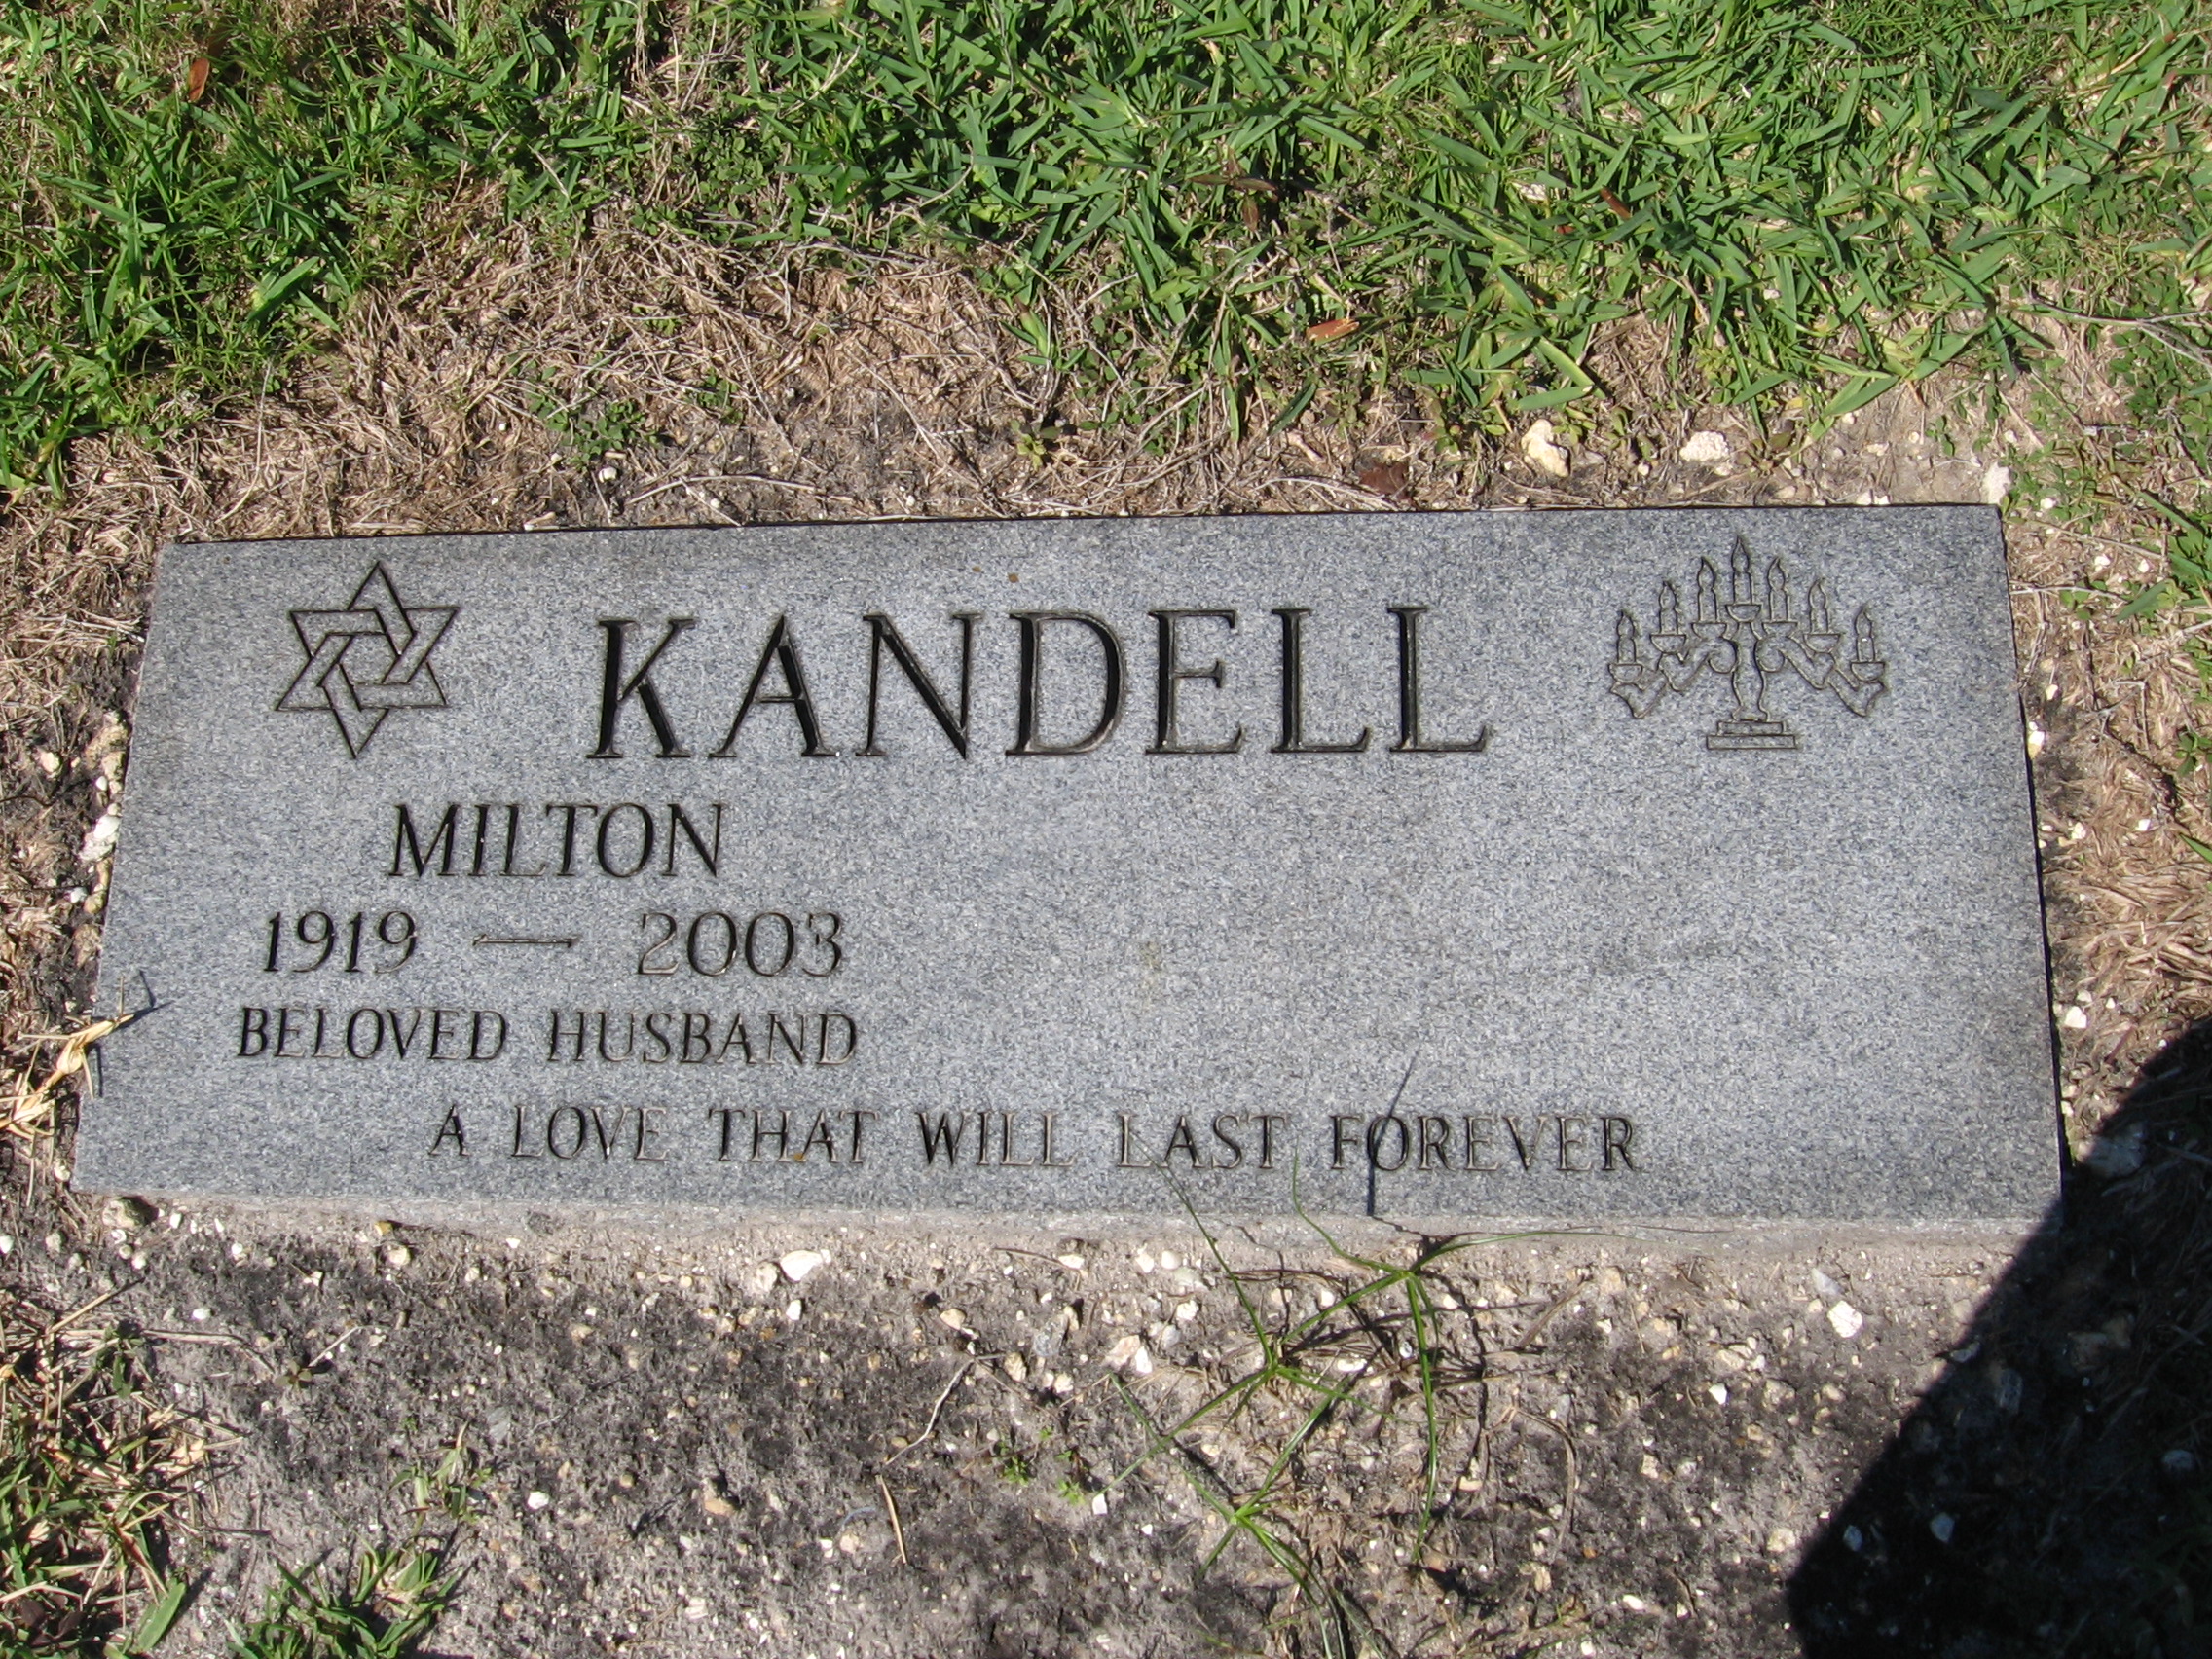 Milton Kandell